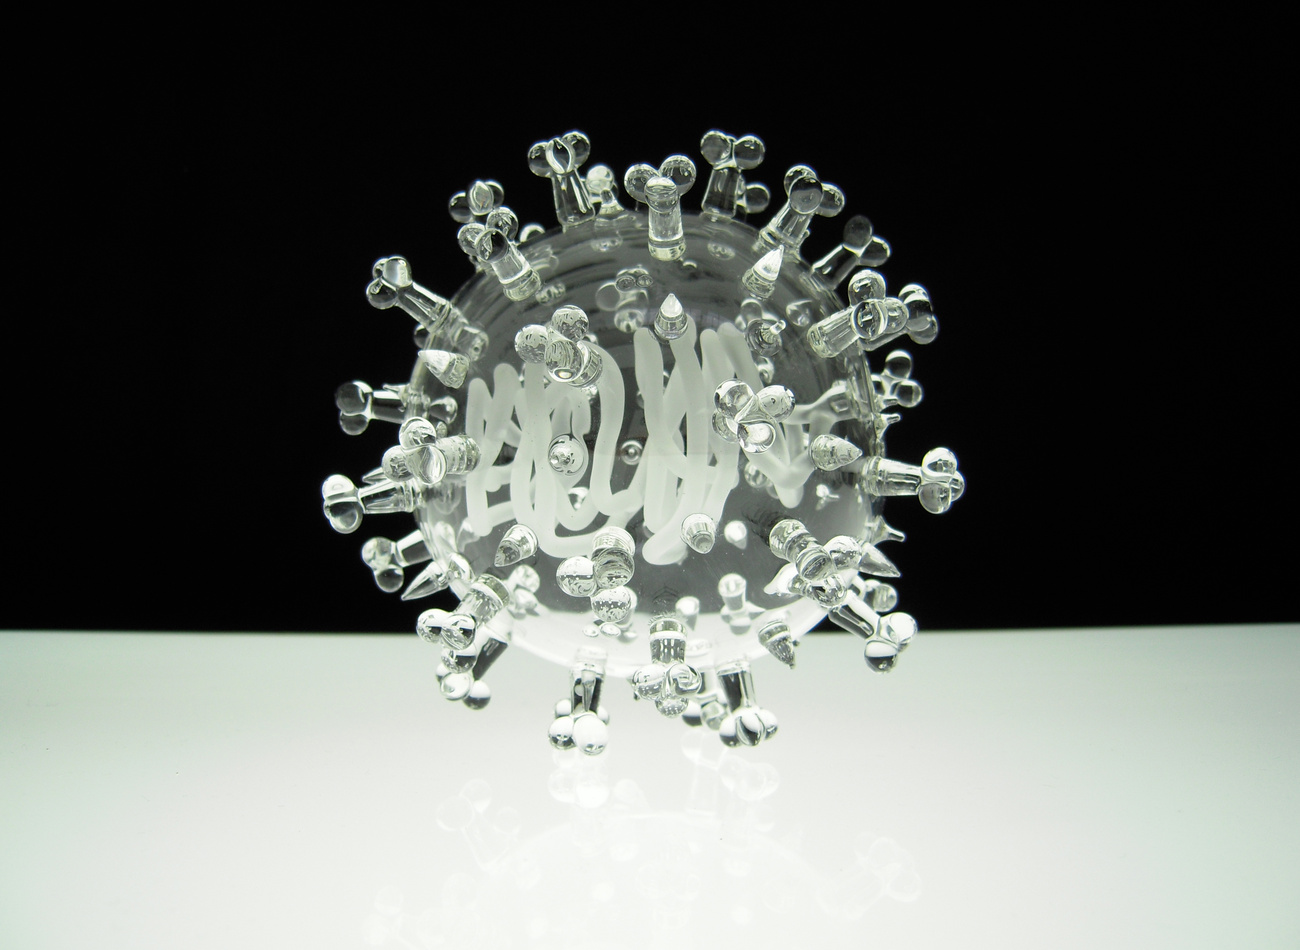 Himlő, az ismeretlen vírus és a HIV